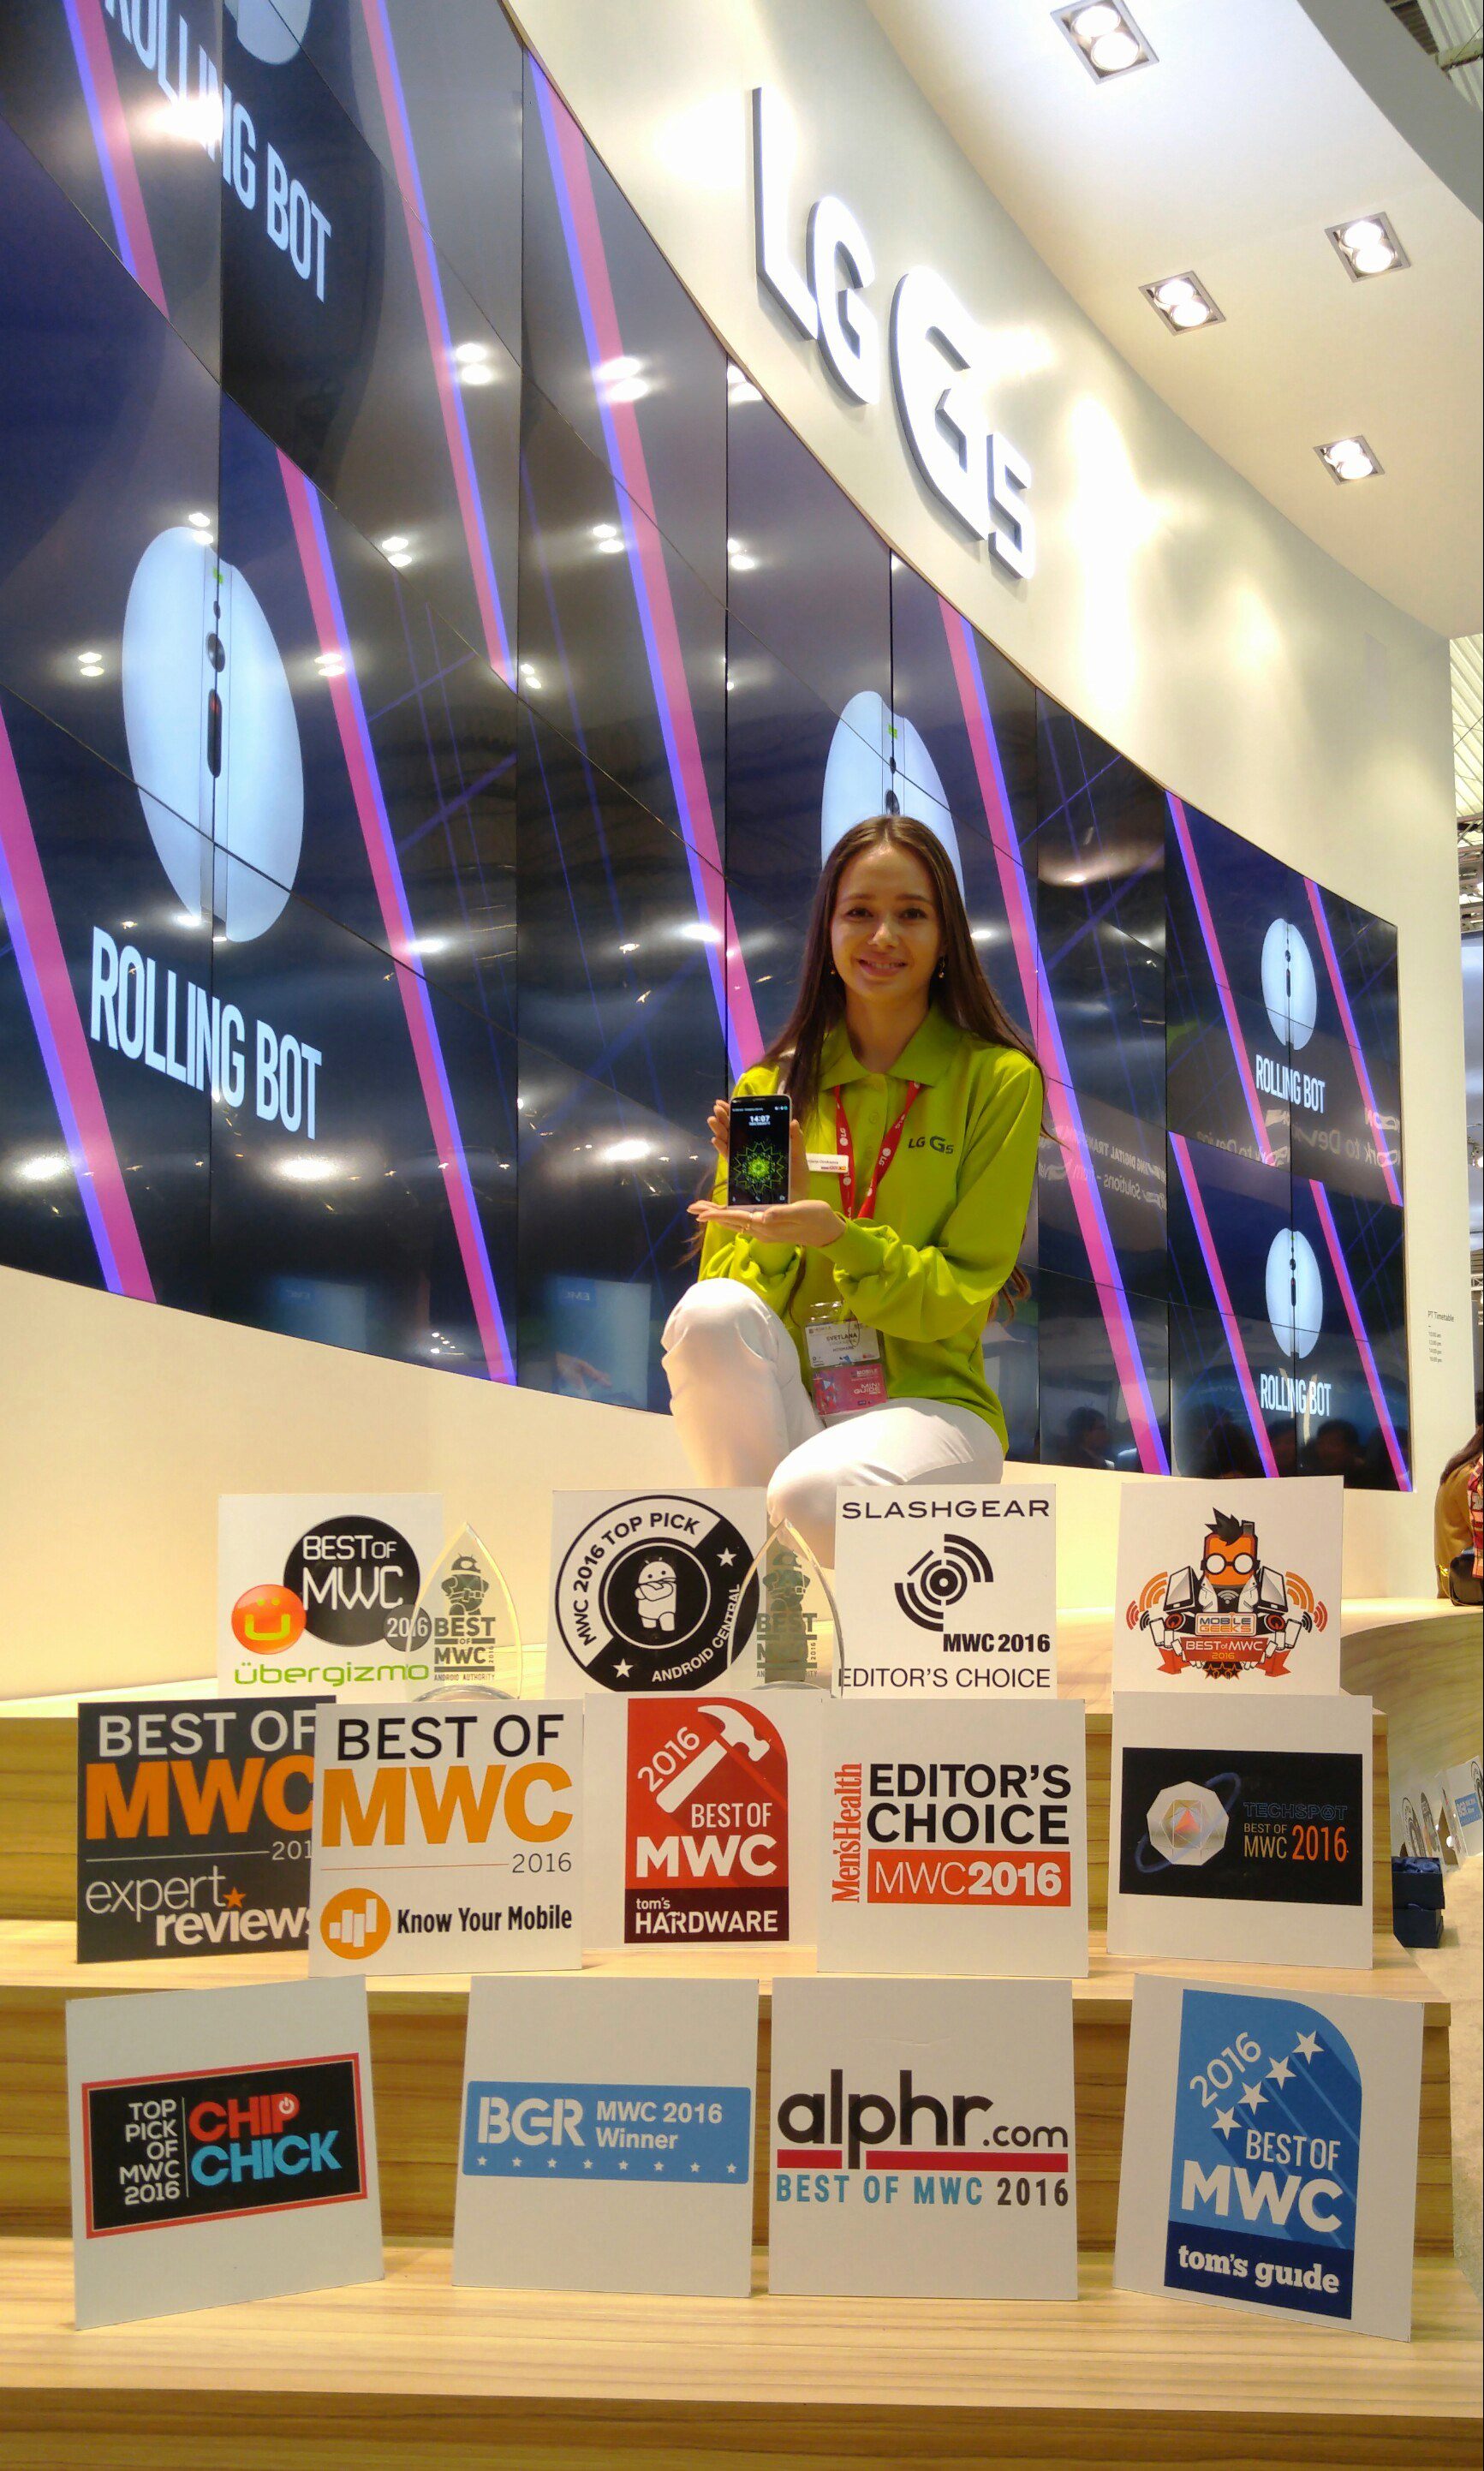 LG G5 Awards at MWC